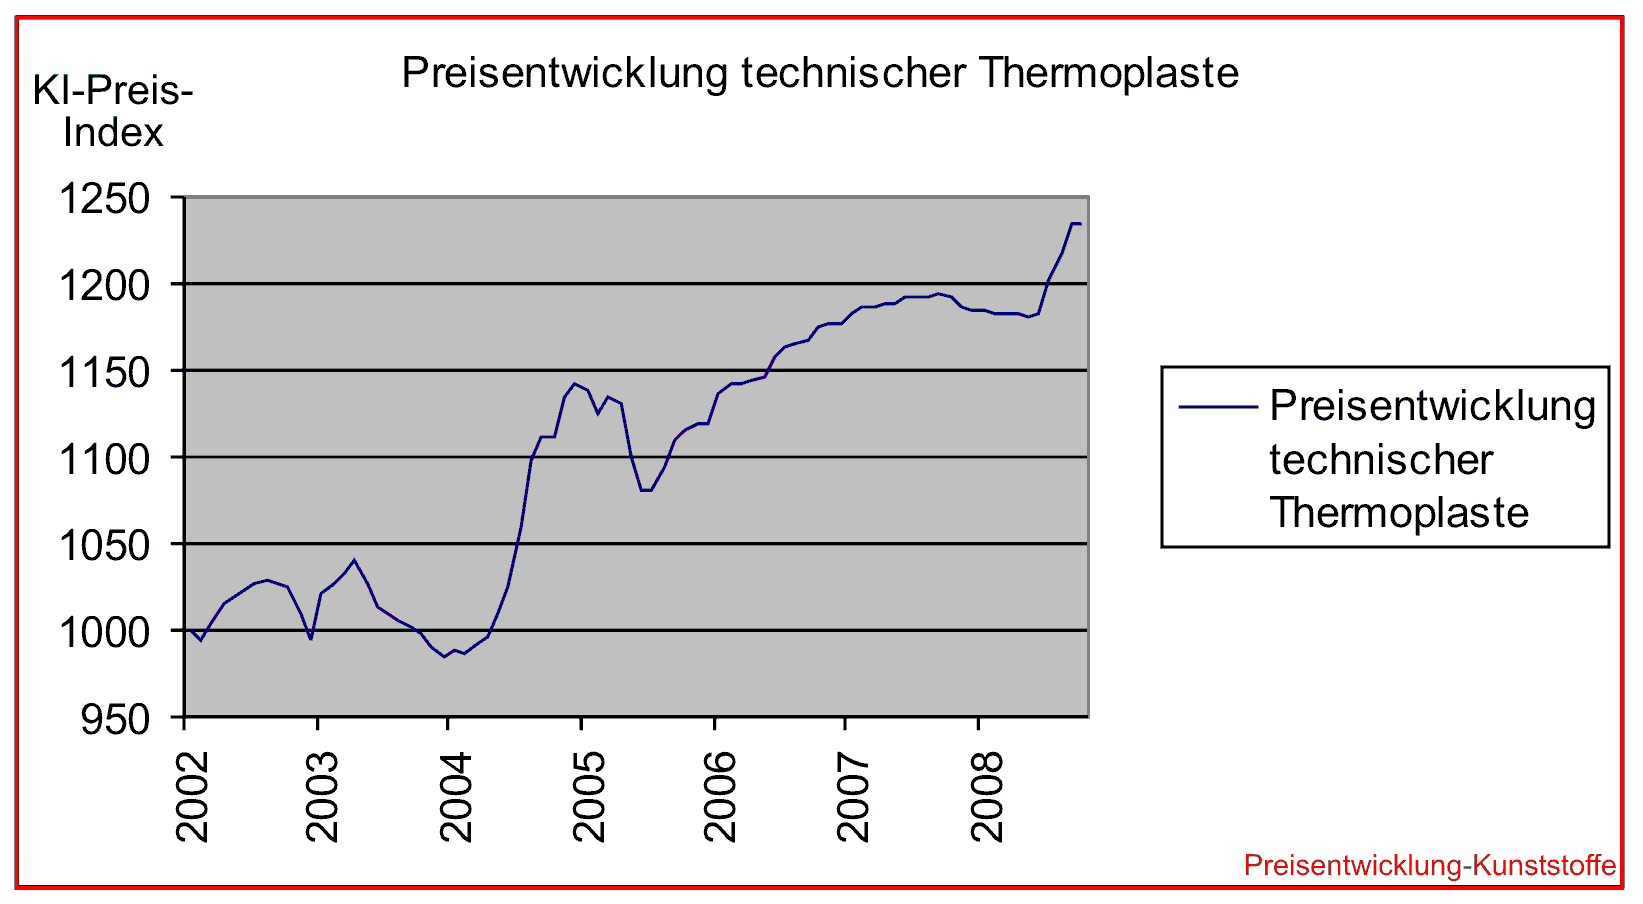 DESK-GmbH_Preisentwicklung-Kunststoffe